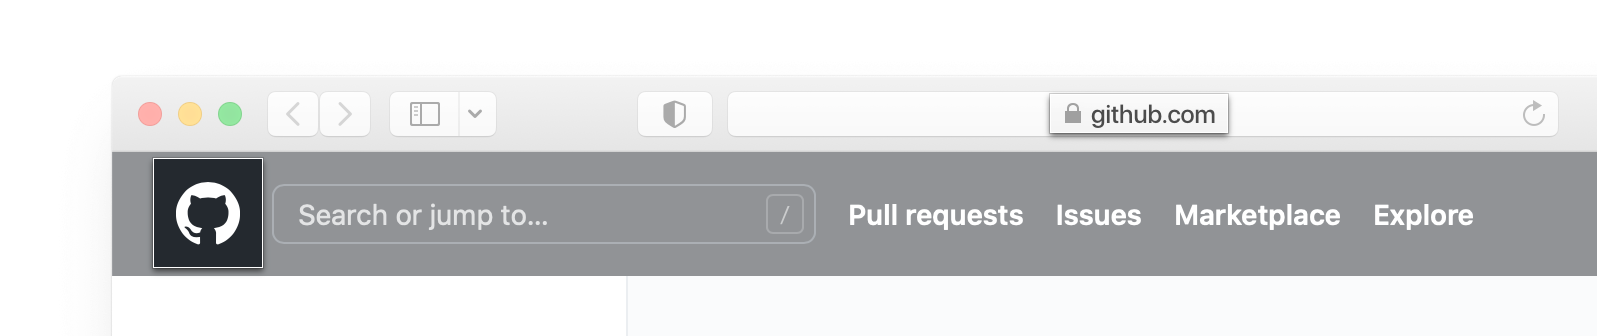 Captura de pantalla de la barra de dirección y del encabezado de GitHub.com en un buscador